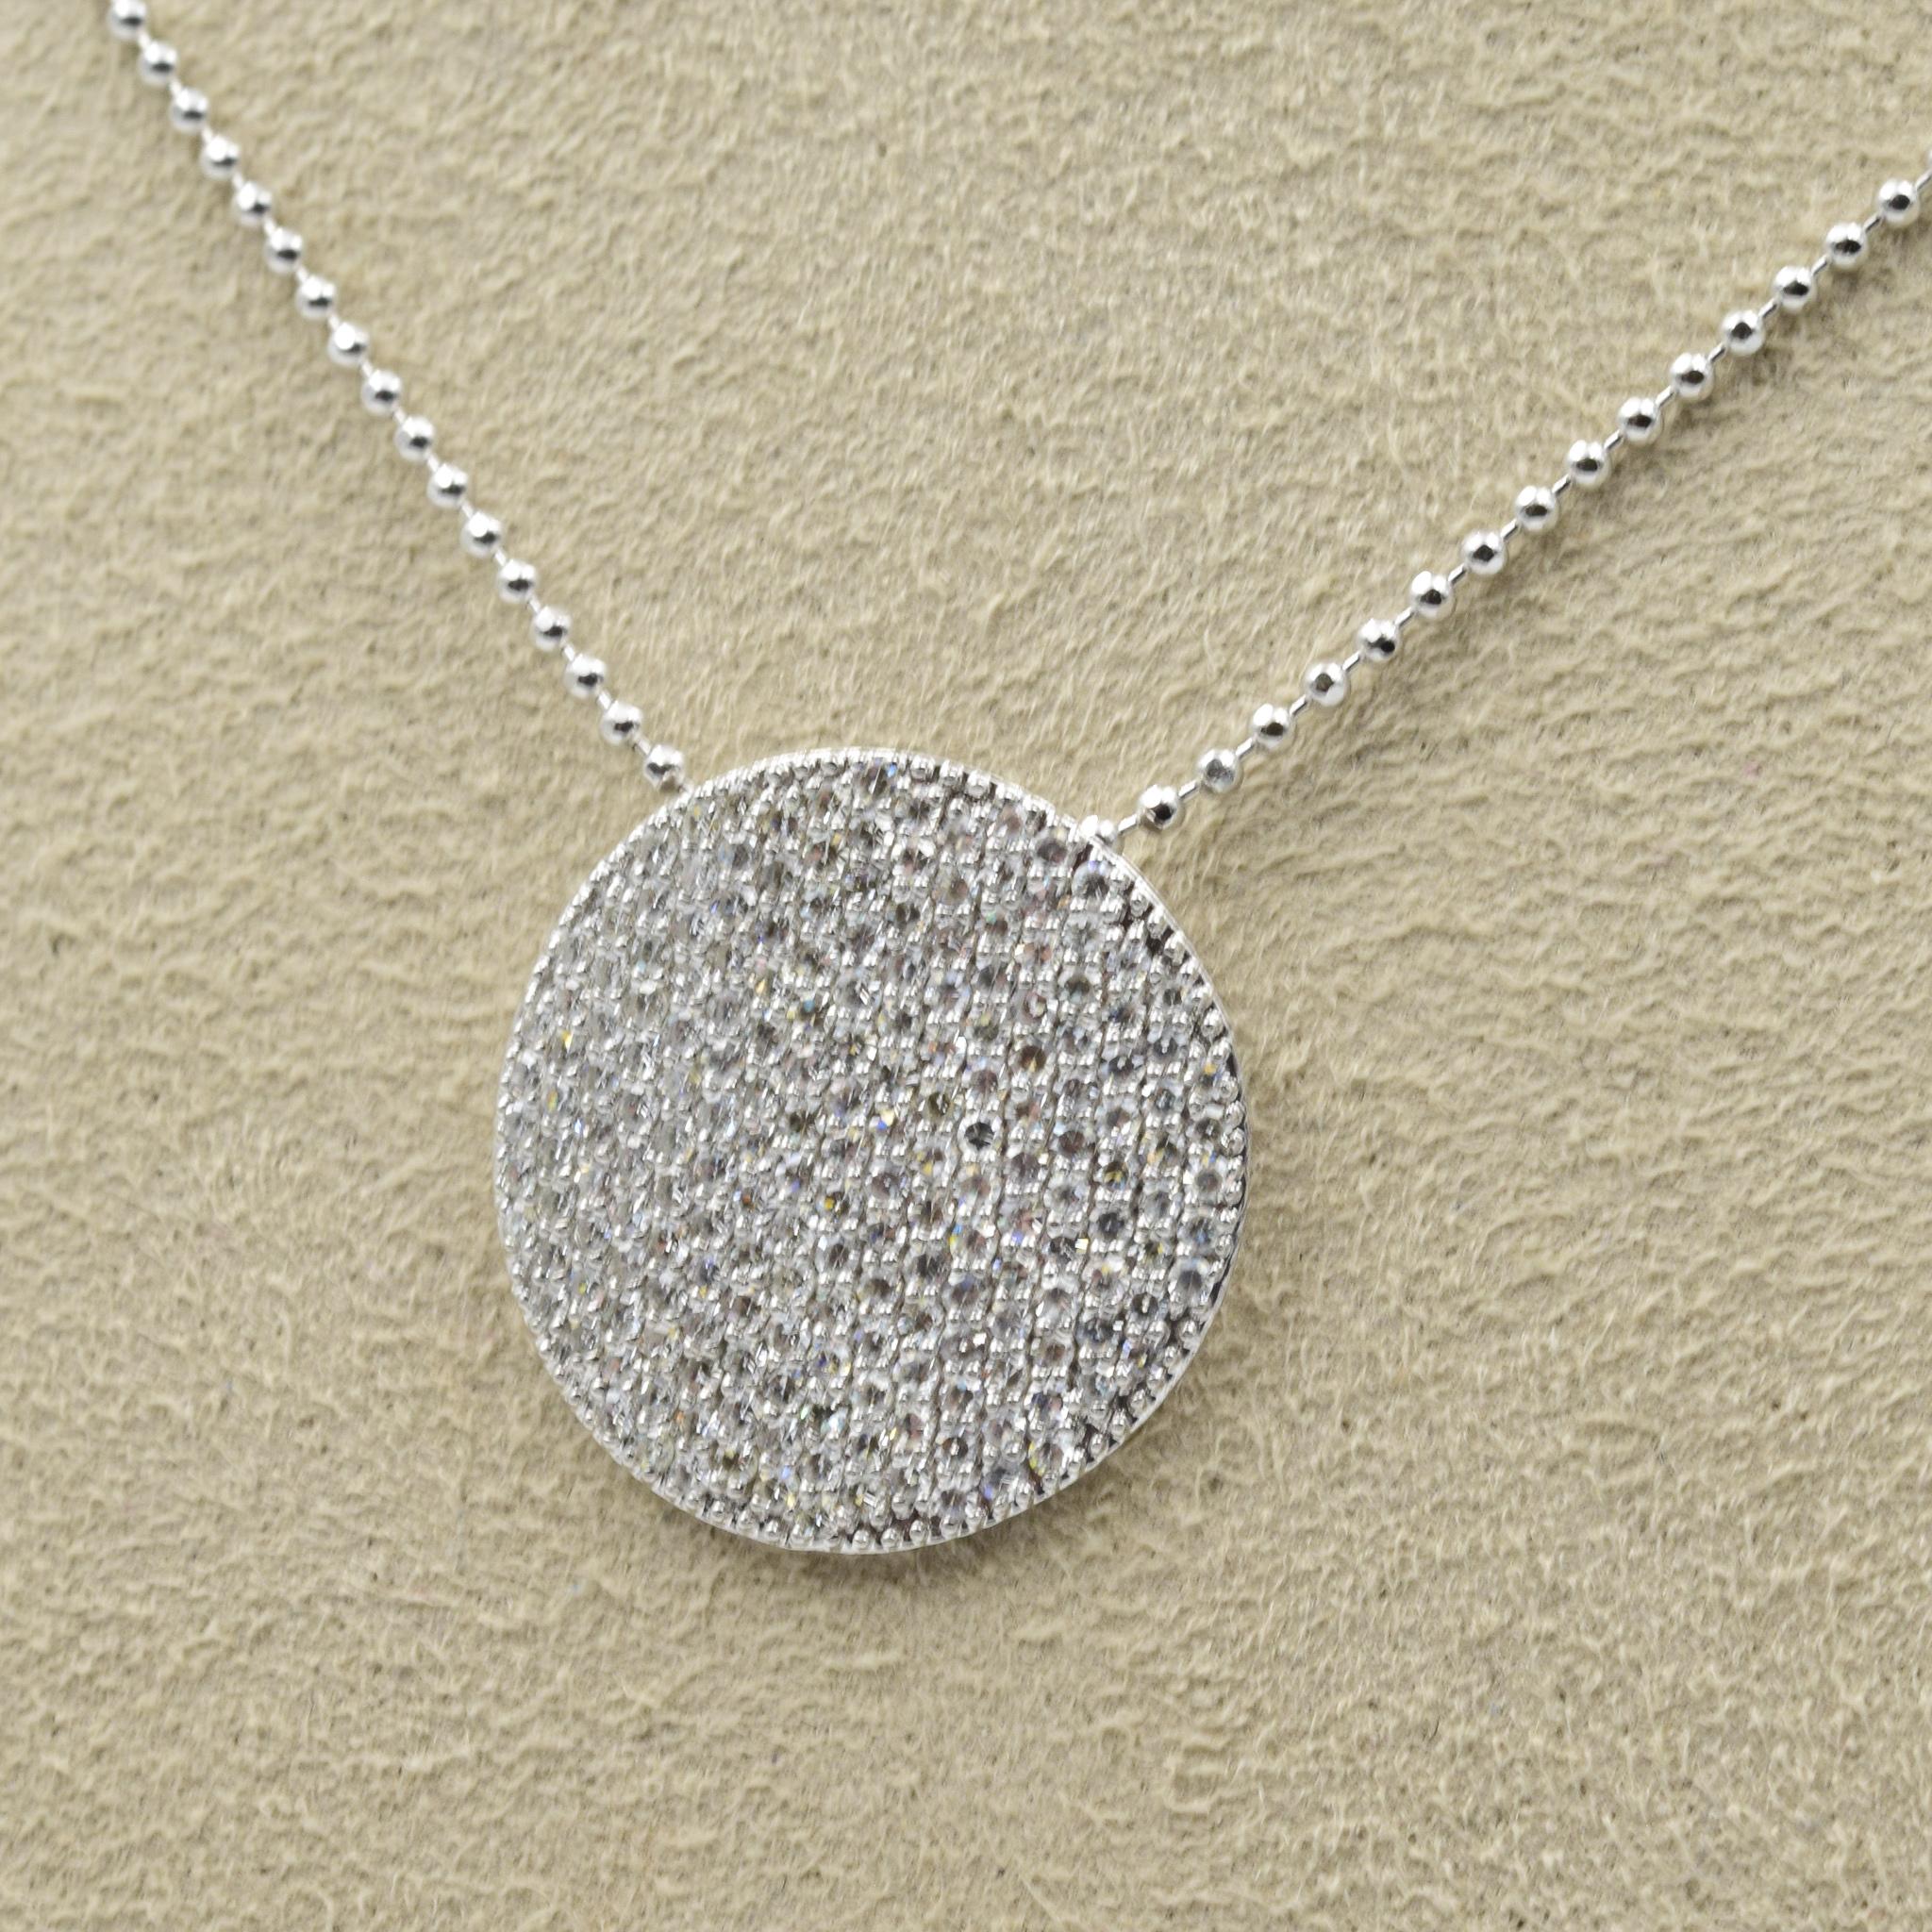 Grand collier Infinity en or et diamants (1.00 tcw)

Numéro de style : N20223PDW
Taille : 18 mm de diamètre
Matériau : or blanc 14k
Longueur : 18